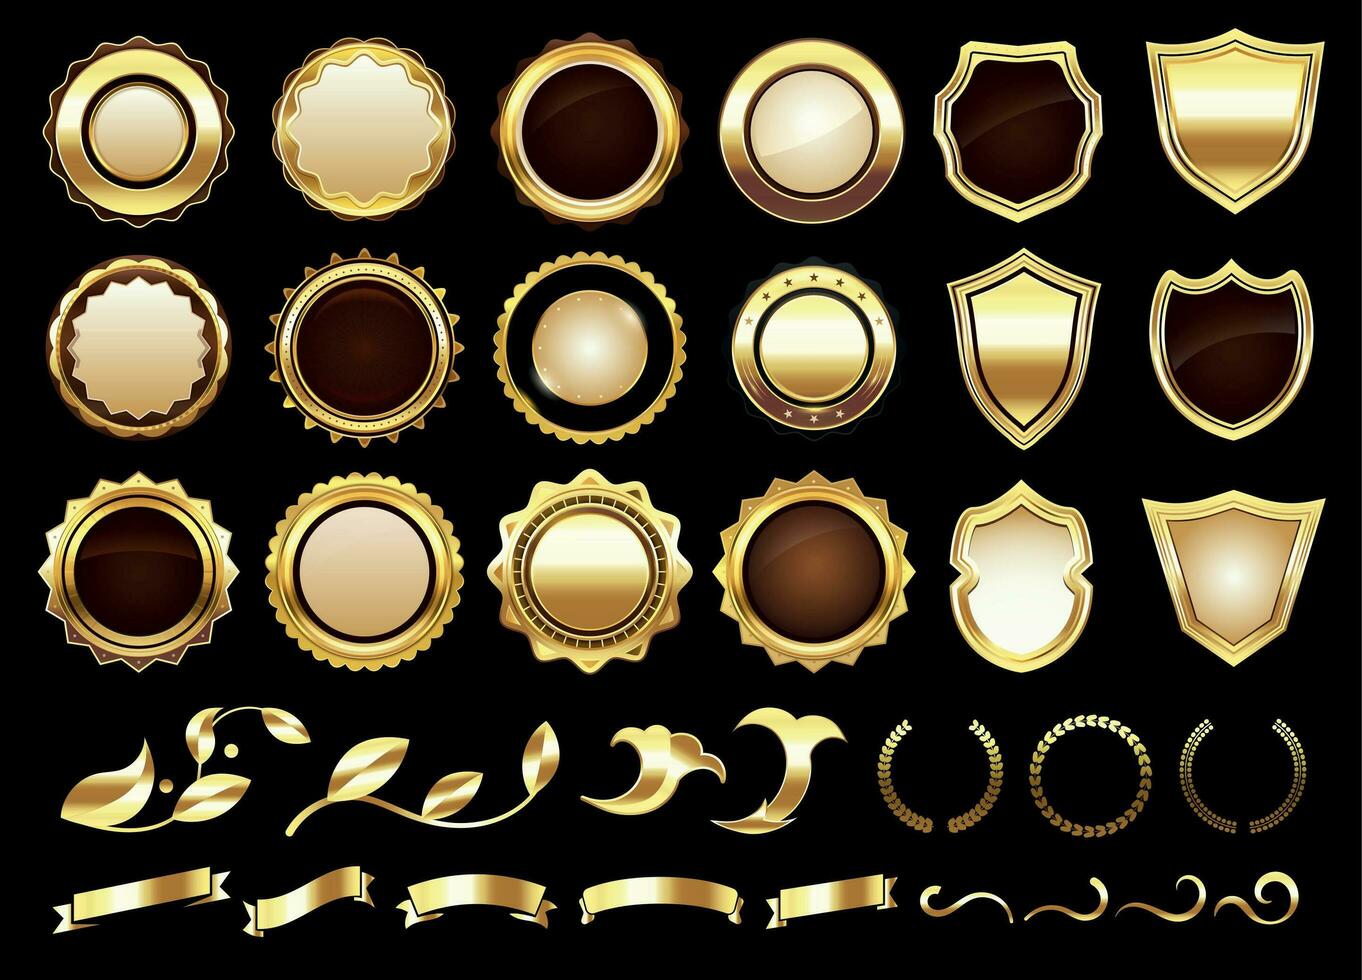 Elegant golden labels. Shields badges, gold ornamental scrolls amd retro label vector illustration set